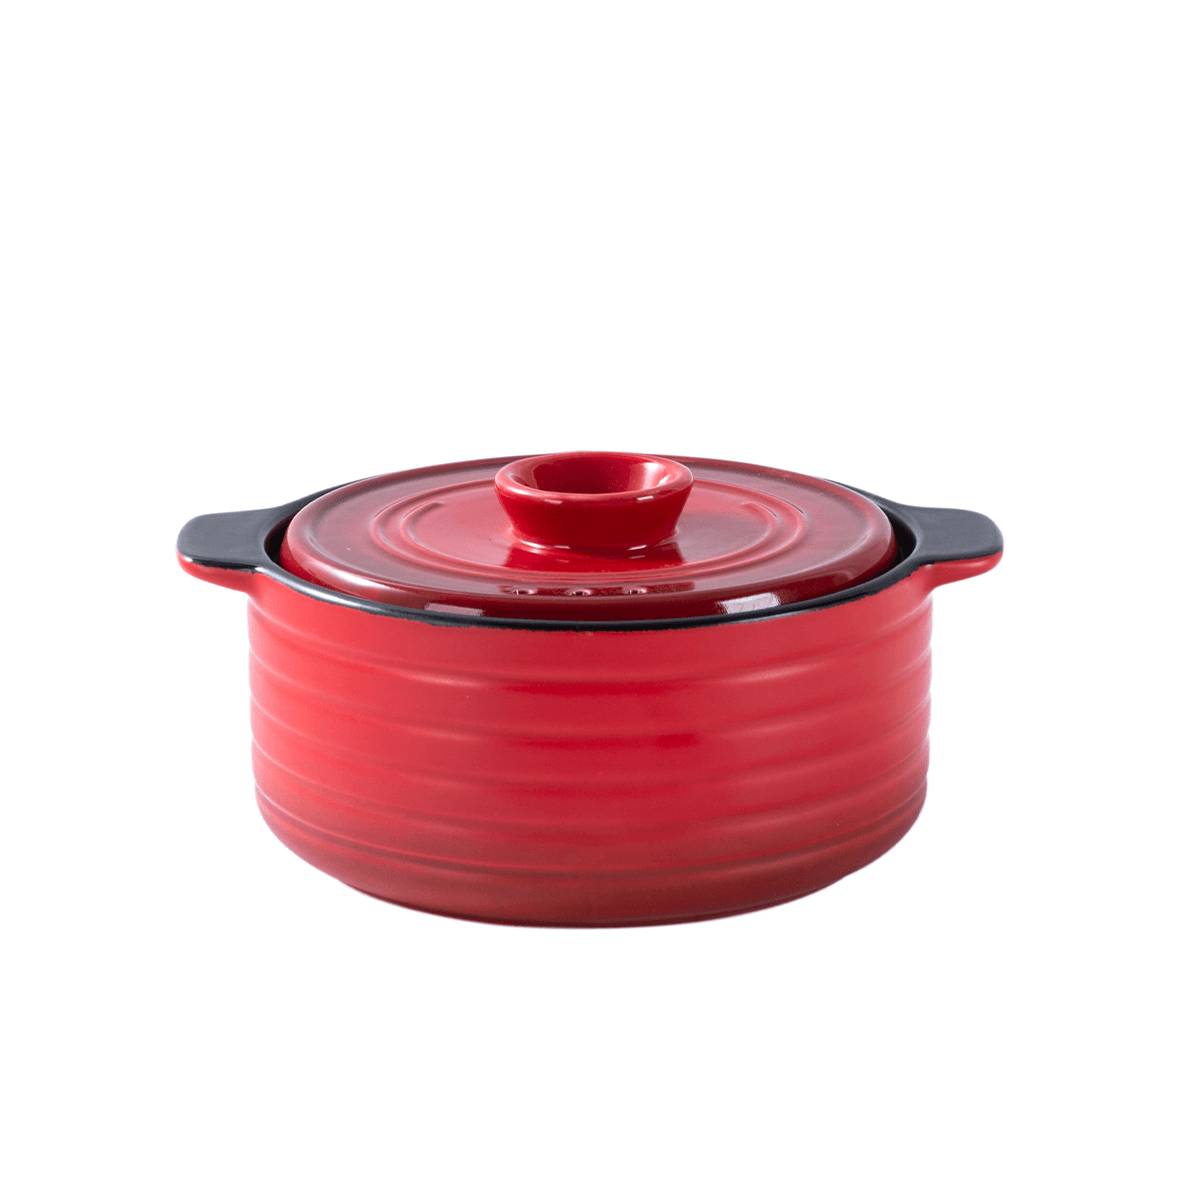 Che Brucia Red Ceramic Direct Fire 1.8 Liter Casserole